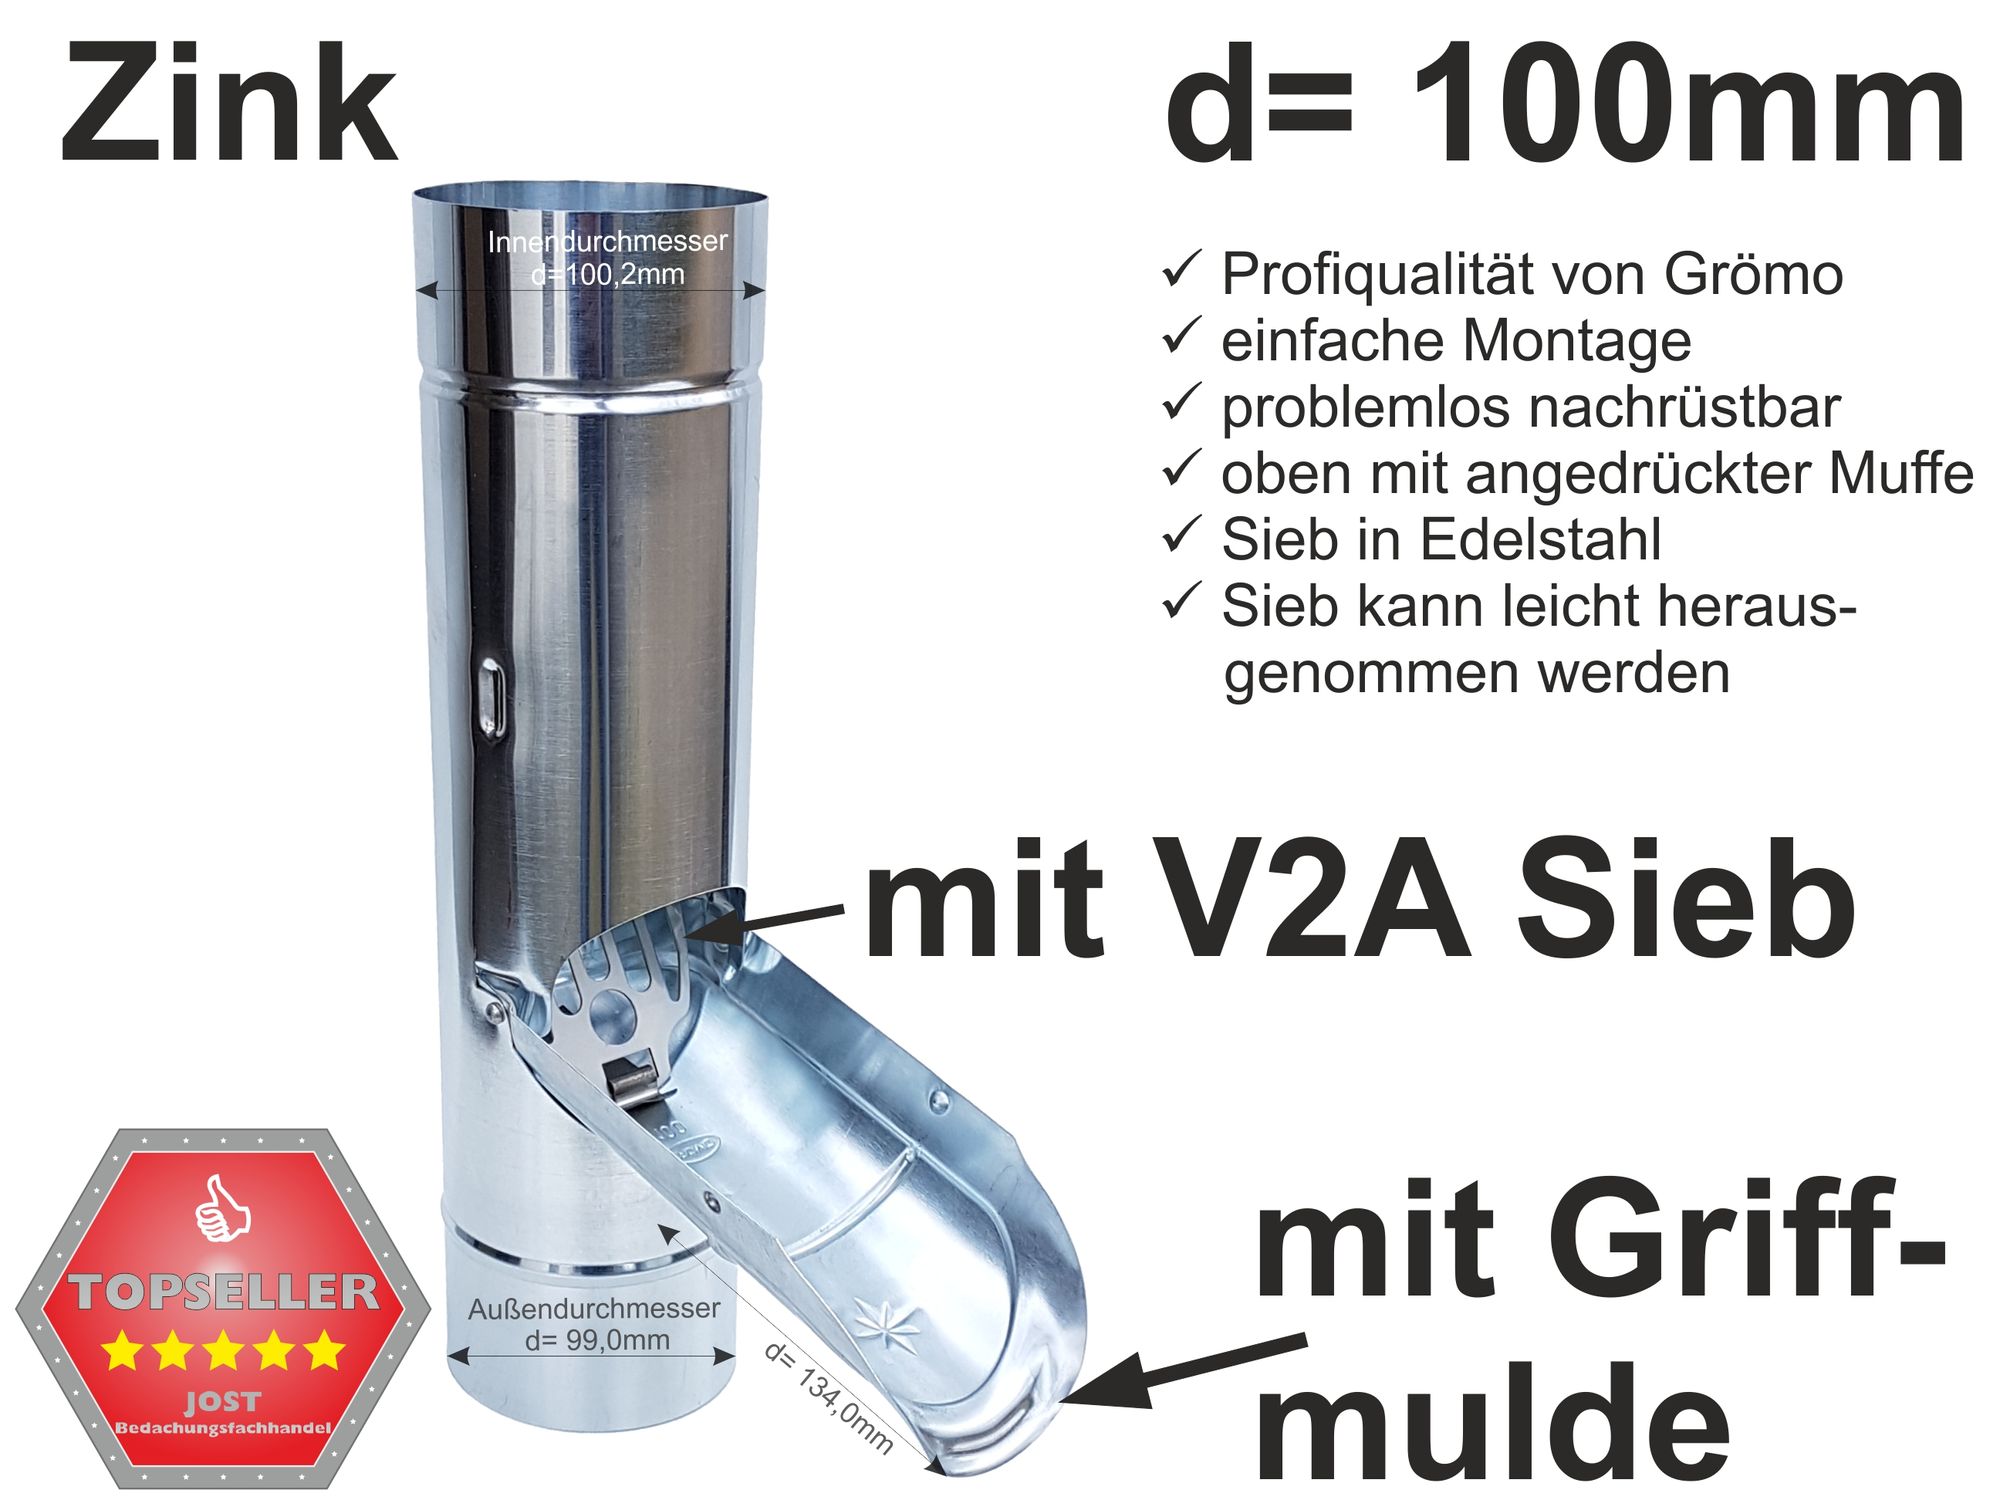 Zink Fallrohr Regenrohrklappe mit V2A Sieb d=100mm, mit Griffmulde -  SONDERPREIS